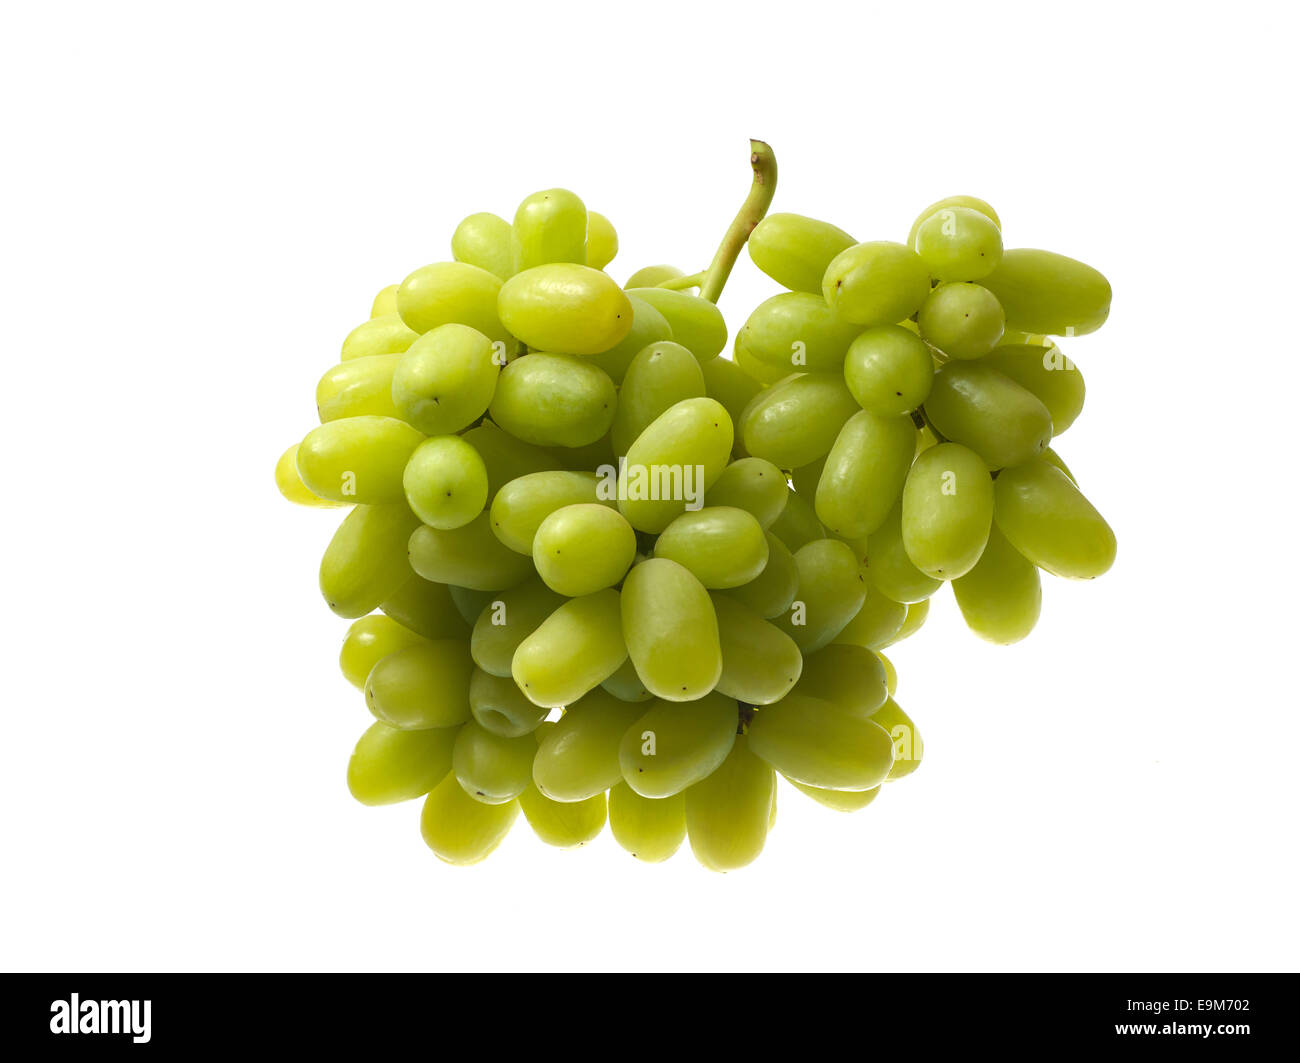 Studio image Thomson Seedless Grapes on white background. Stock Photo